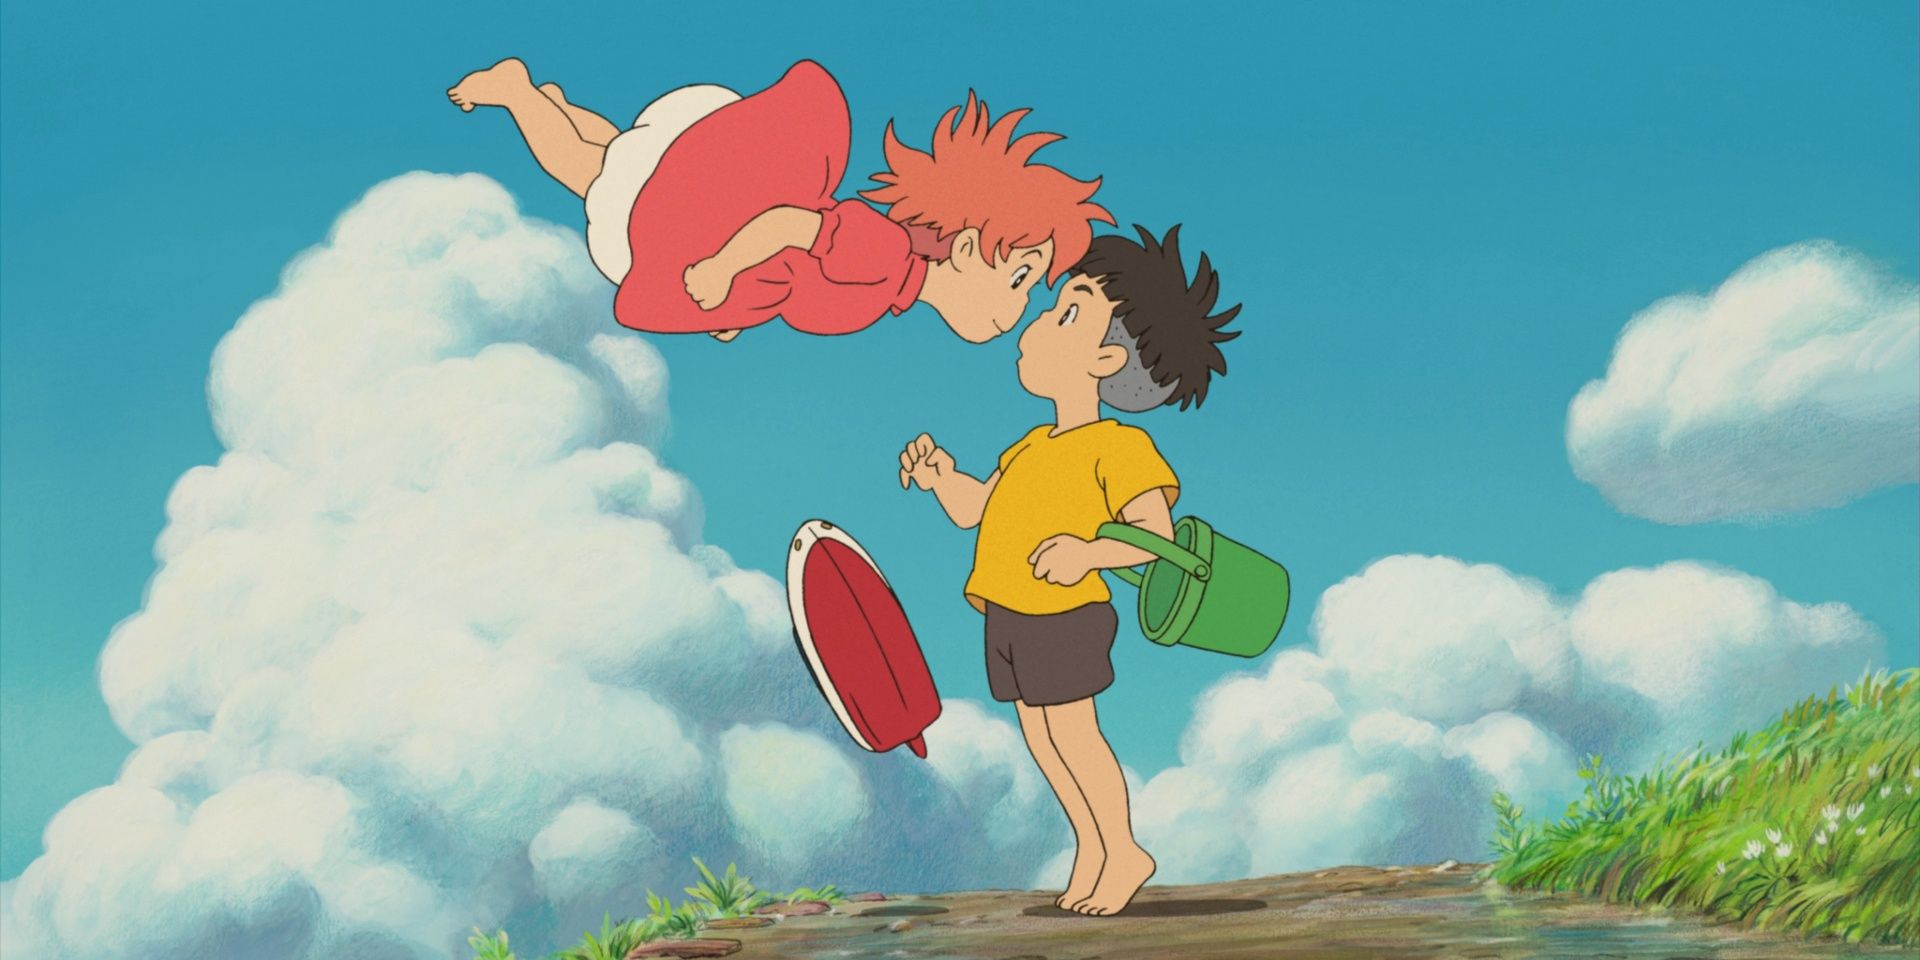 Los 10 peores animes de Studio Ghibli (según MyAnimeList) | Cultture